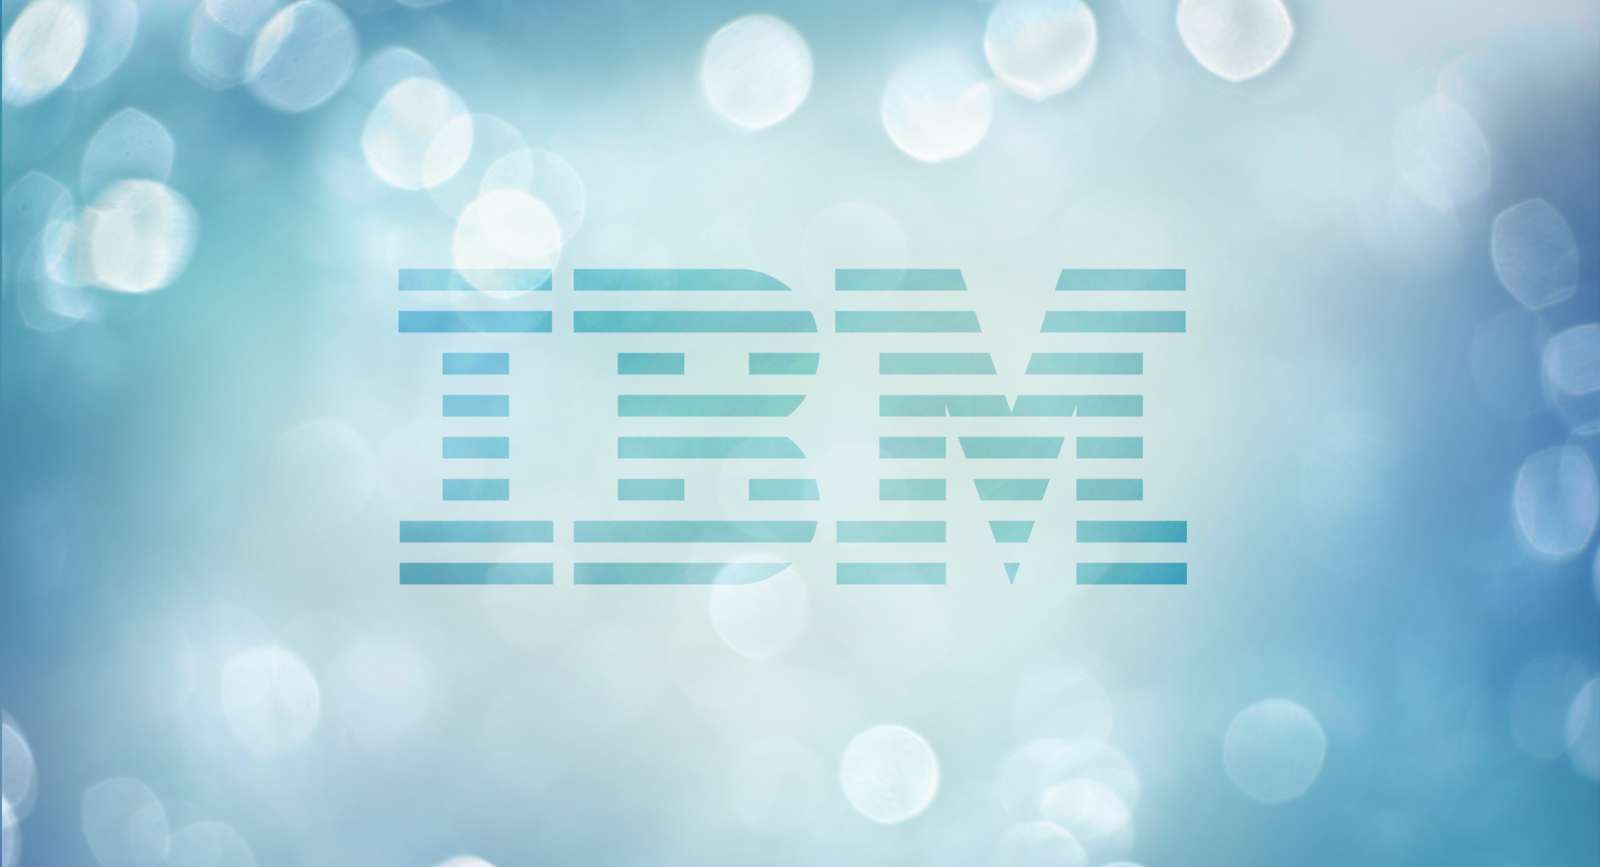 IBM обои. IBM обои на рабочий стол. Заставка.. IBM.. Высокого.. Качества. Обои 2000*1200 IBM. Ibm blue